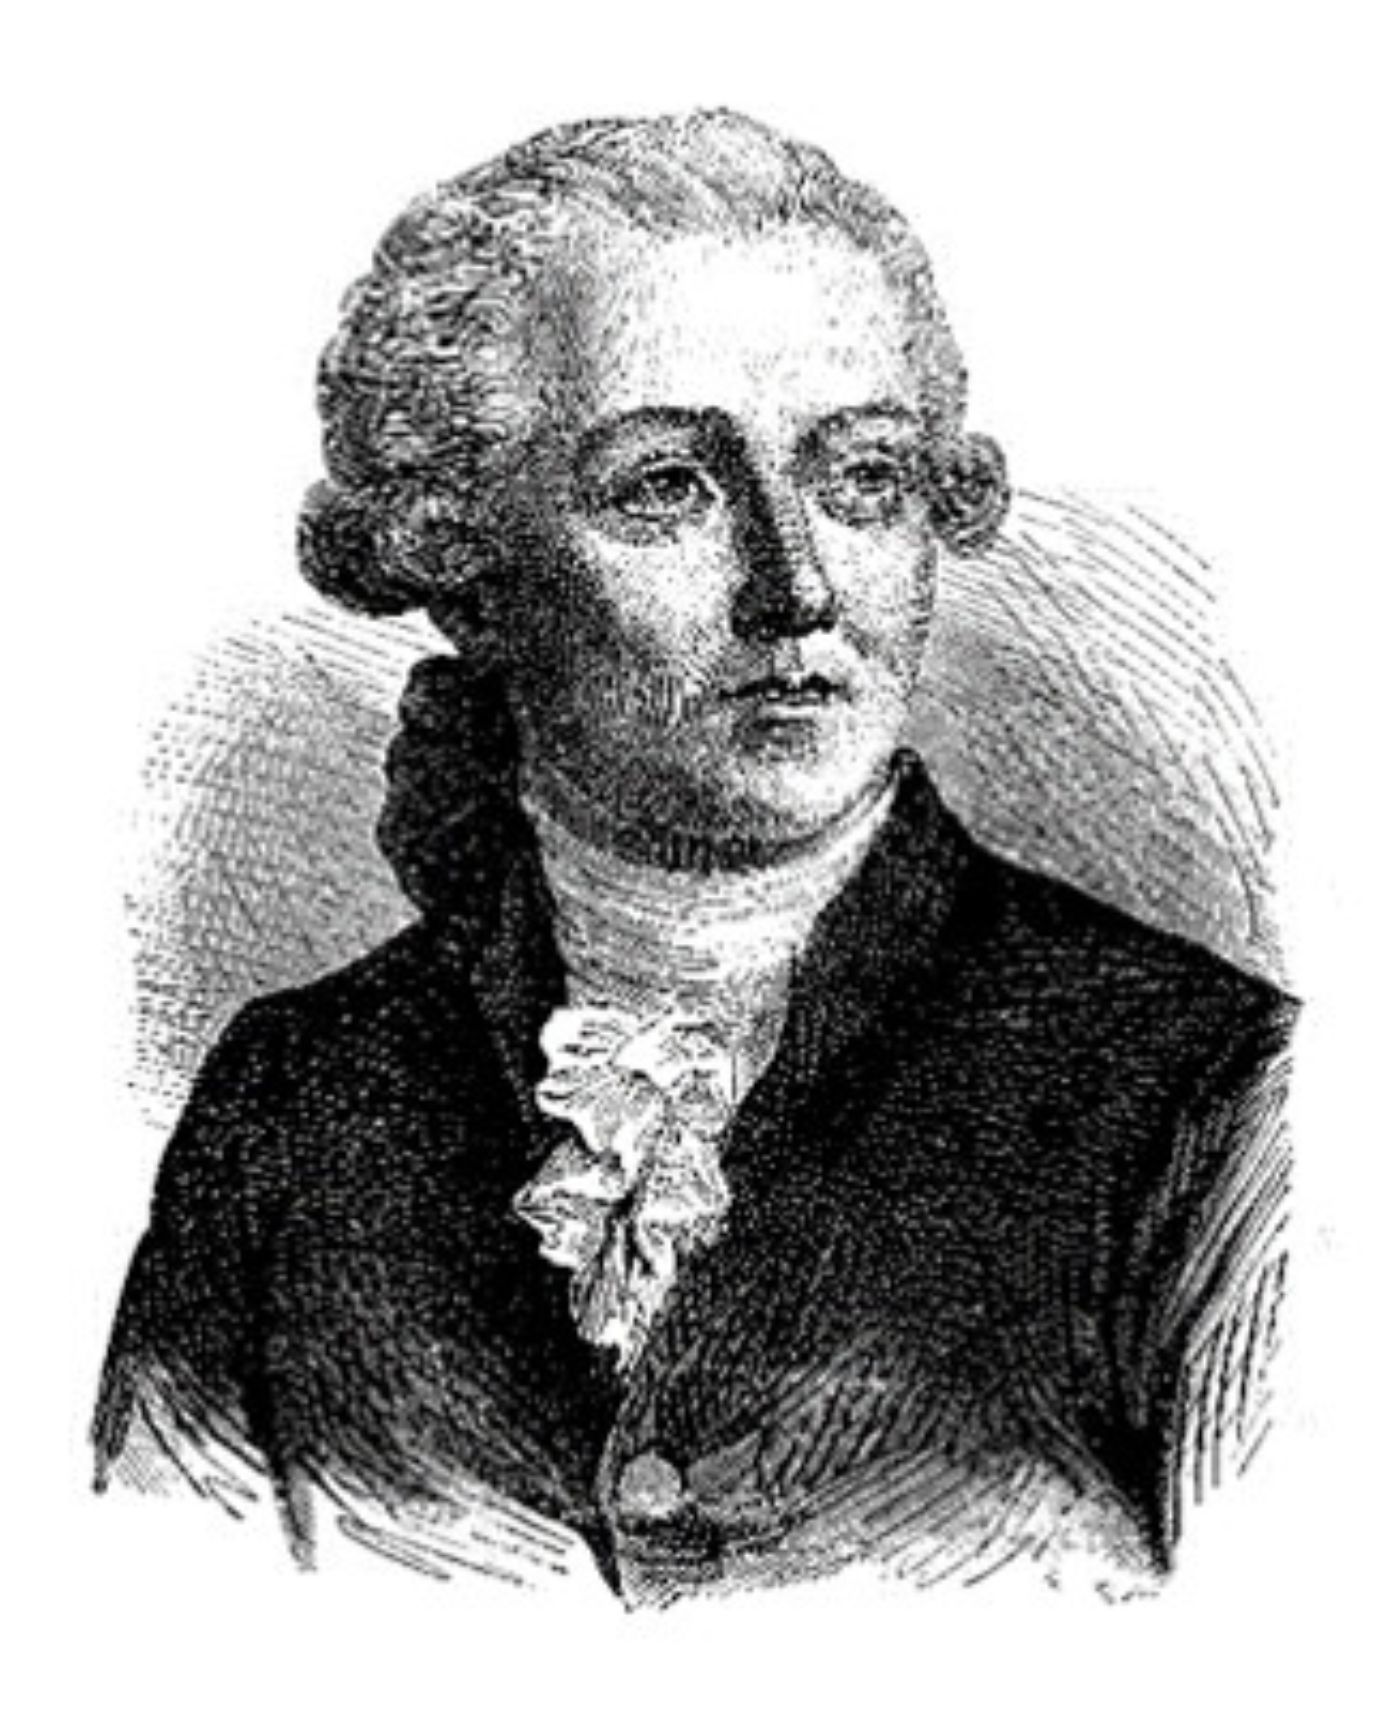 Energy described Antoine-Lavoisier